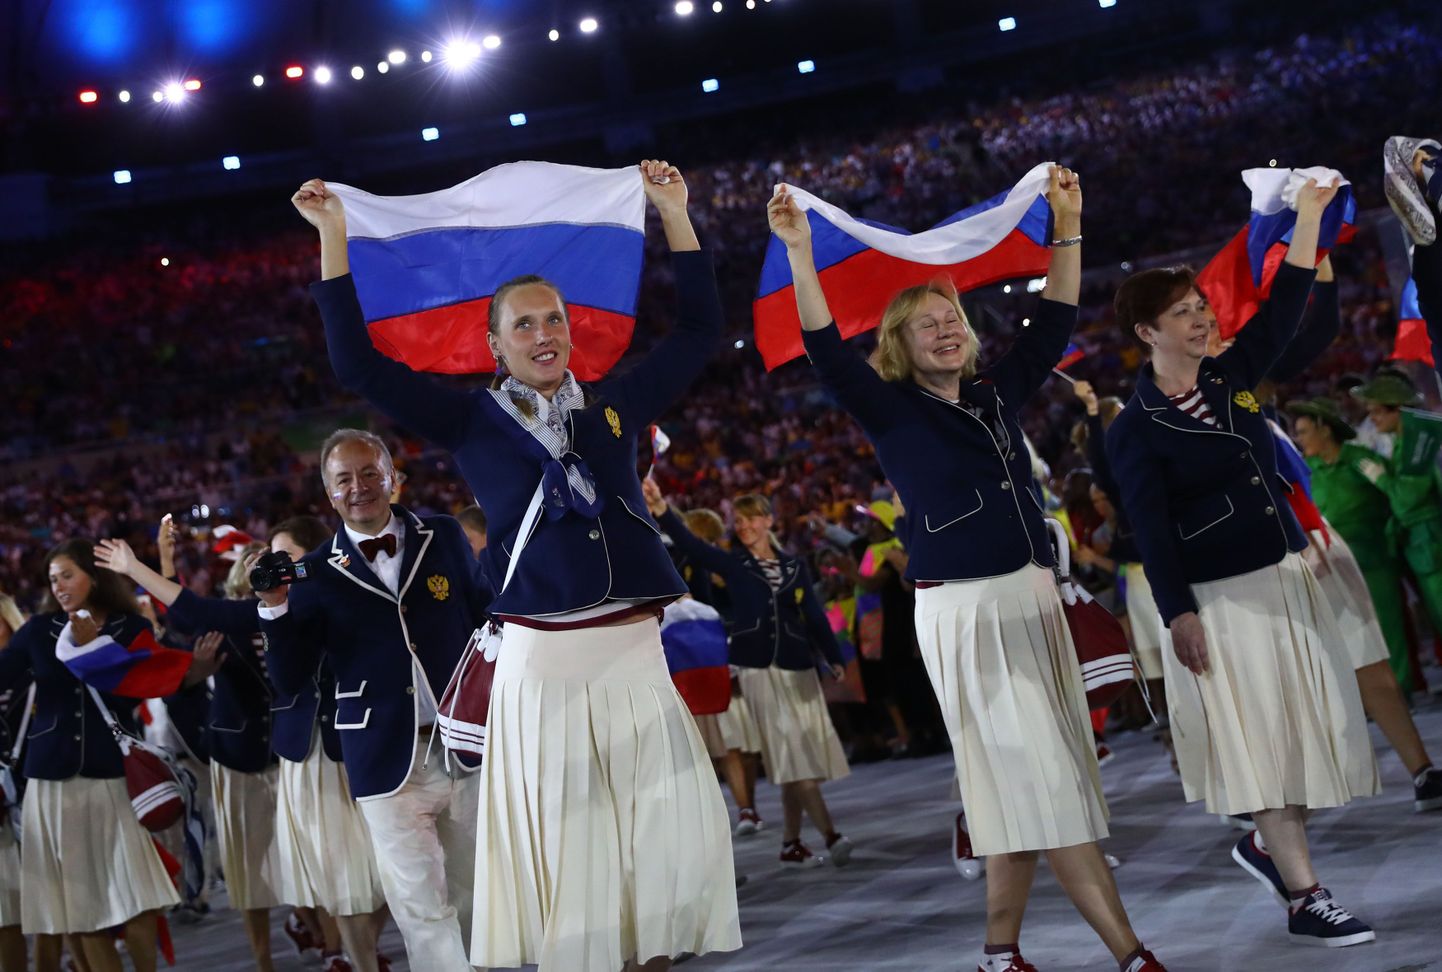 Venemaa delegatsioon Rio olümpia avatseremoonial.